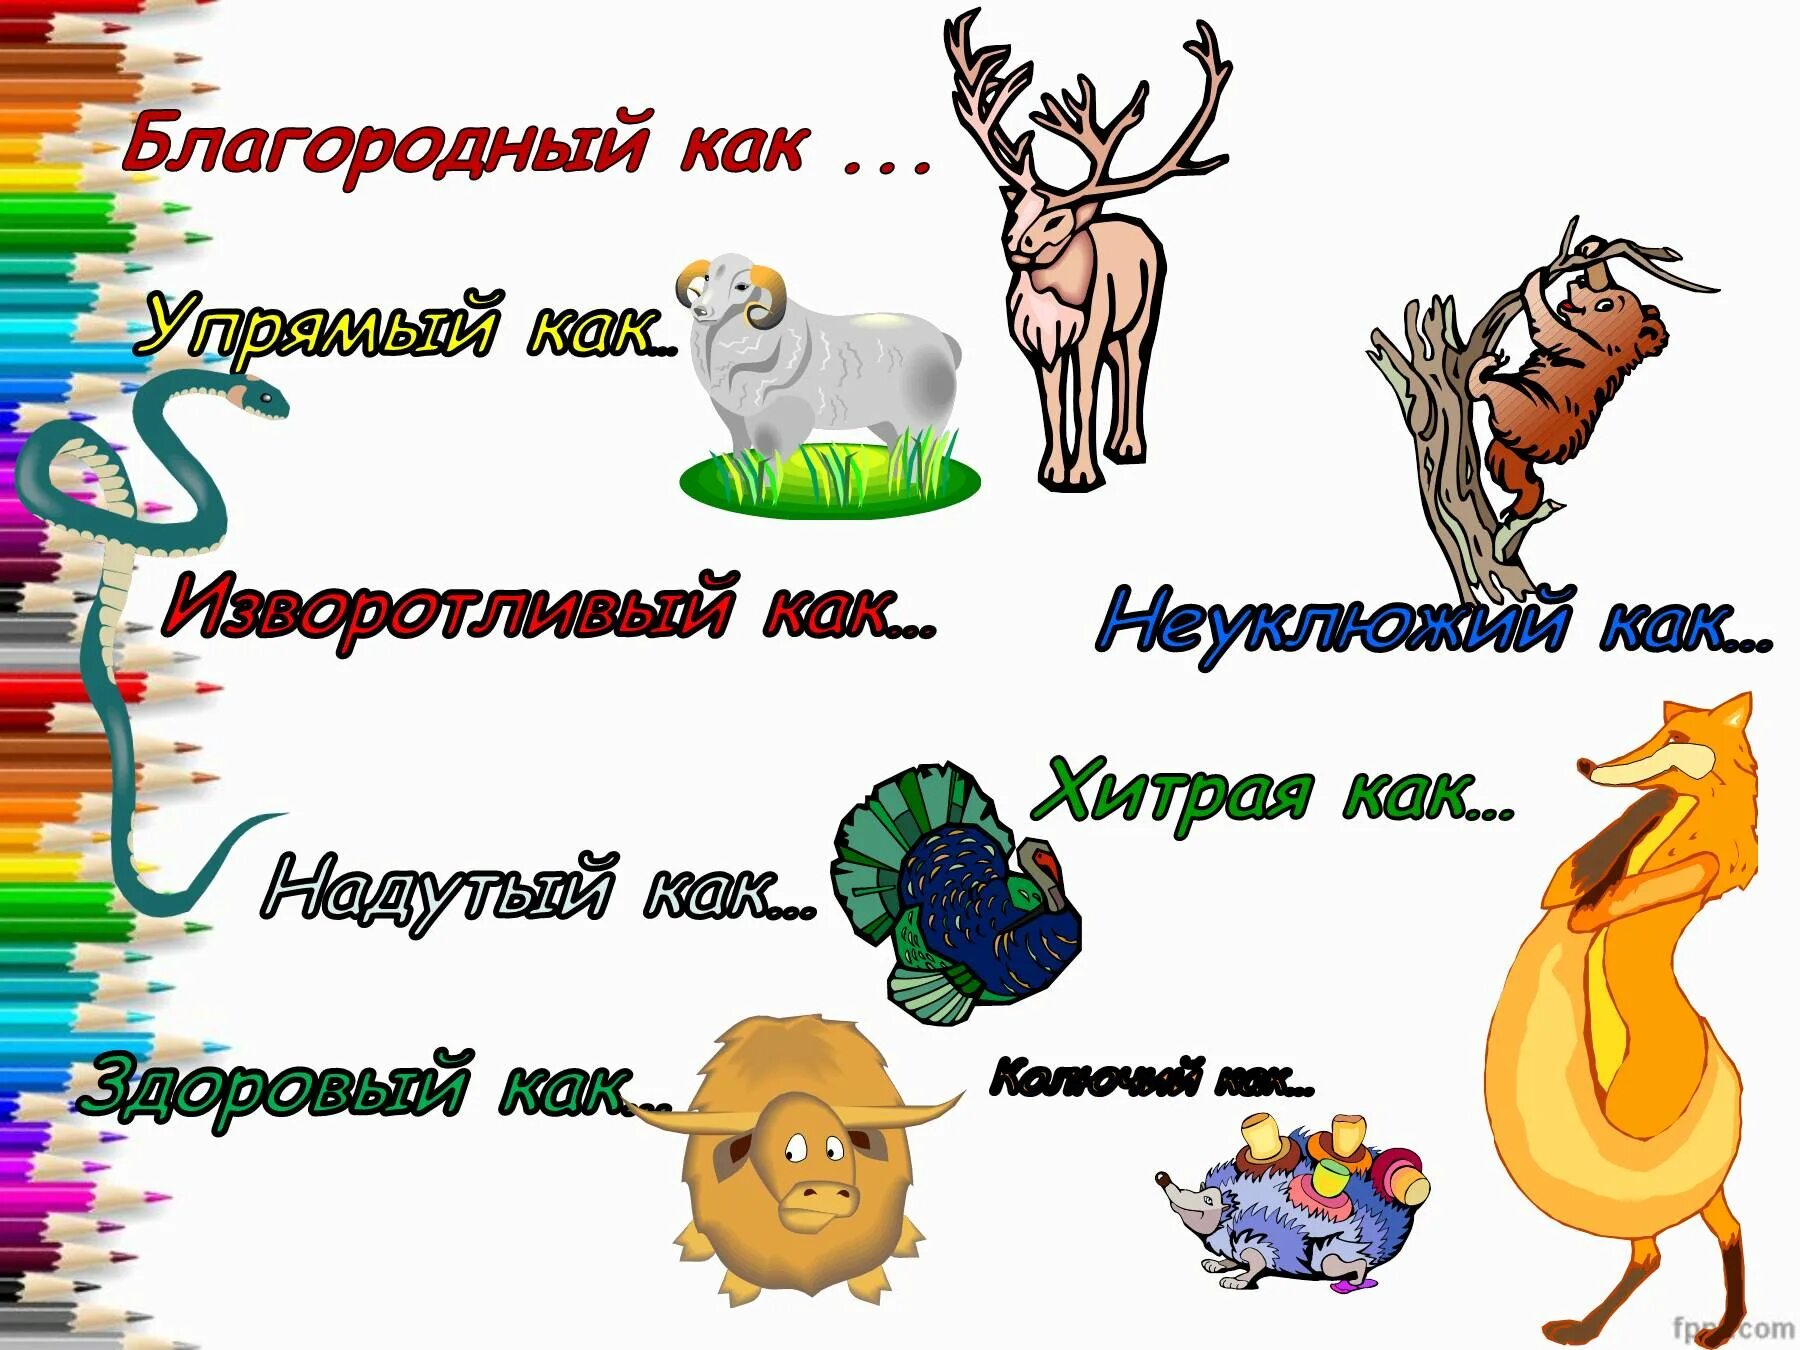 3 класс русский язык прилагательное презентация